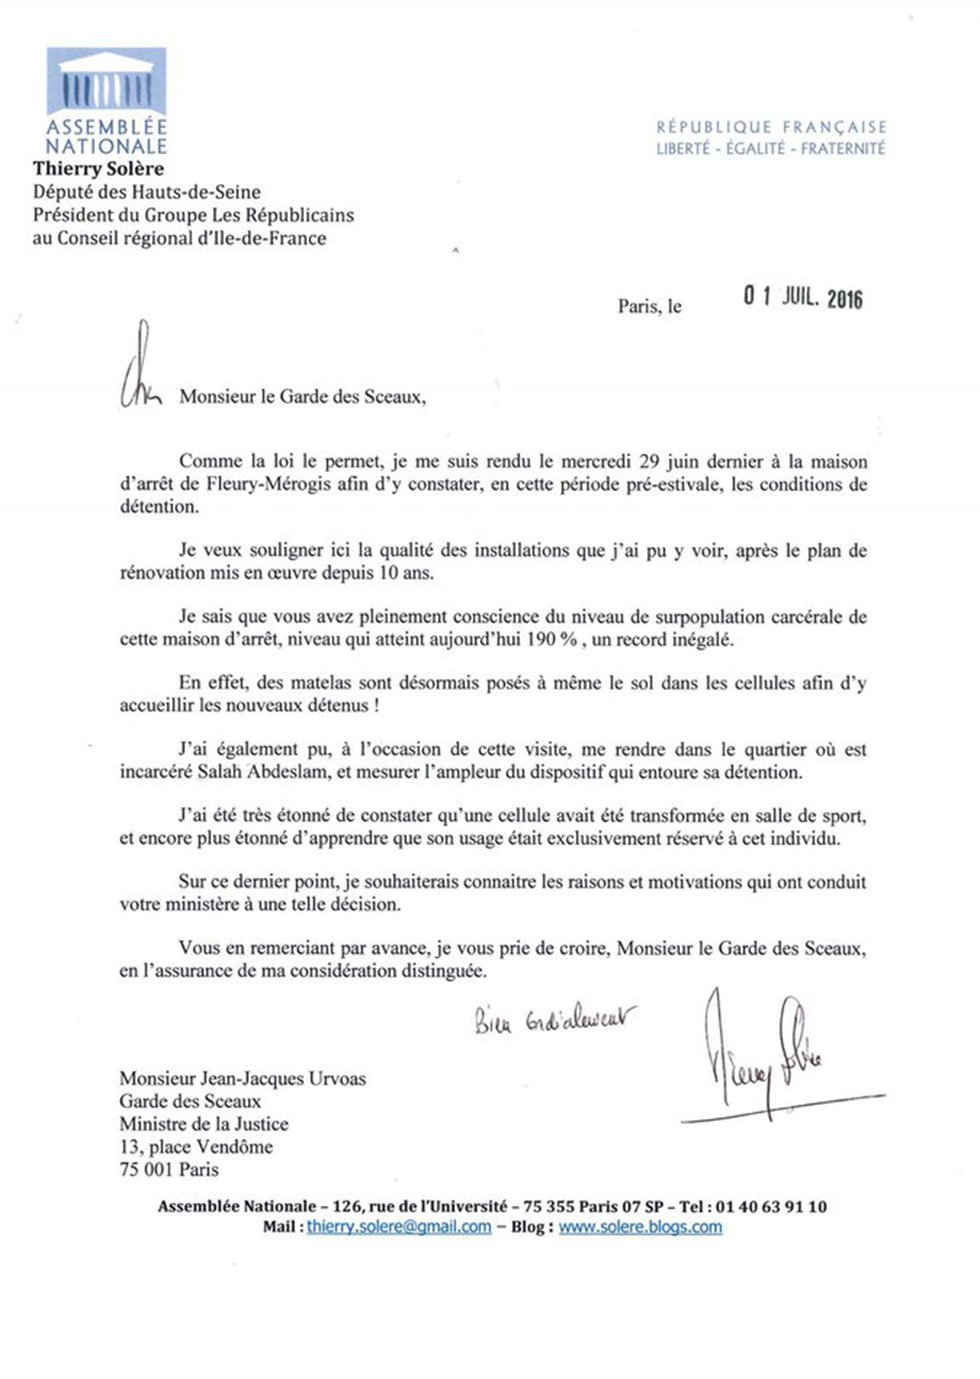 מכתב תלונה של חבר הפרלמנט הצרפתי על תנאי הכליאה של המחבל מפריז ()